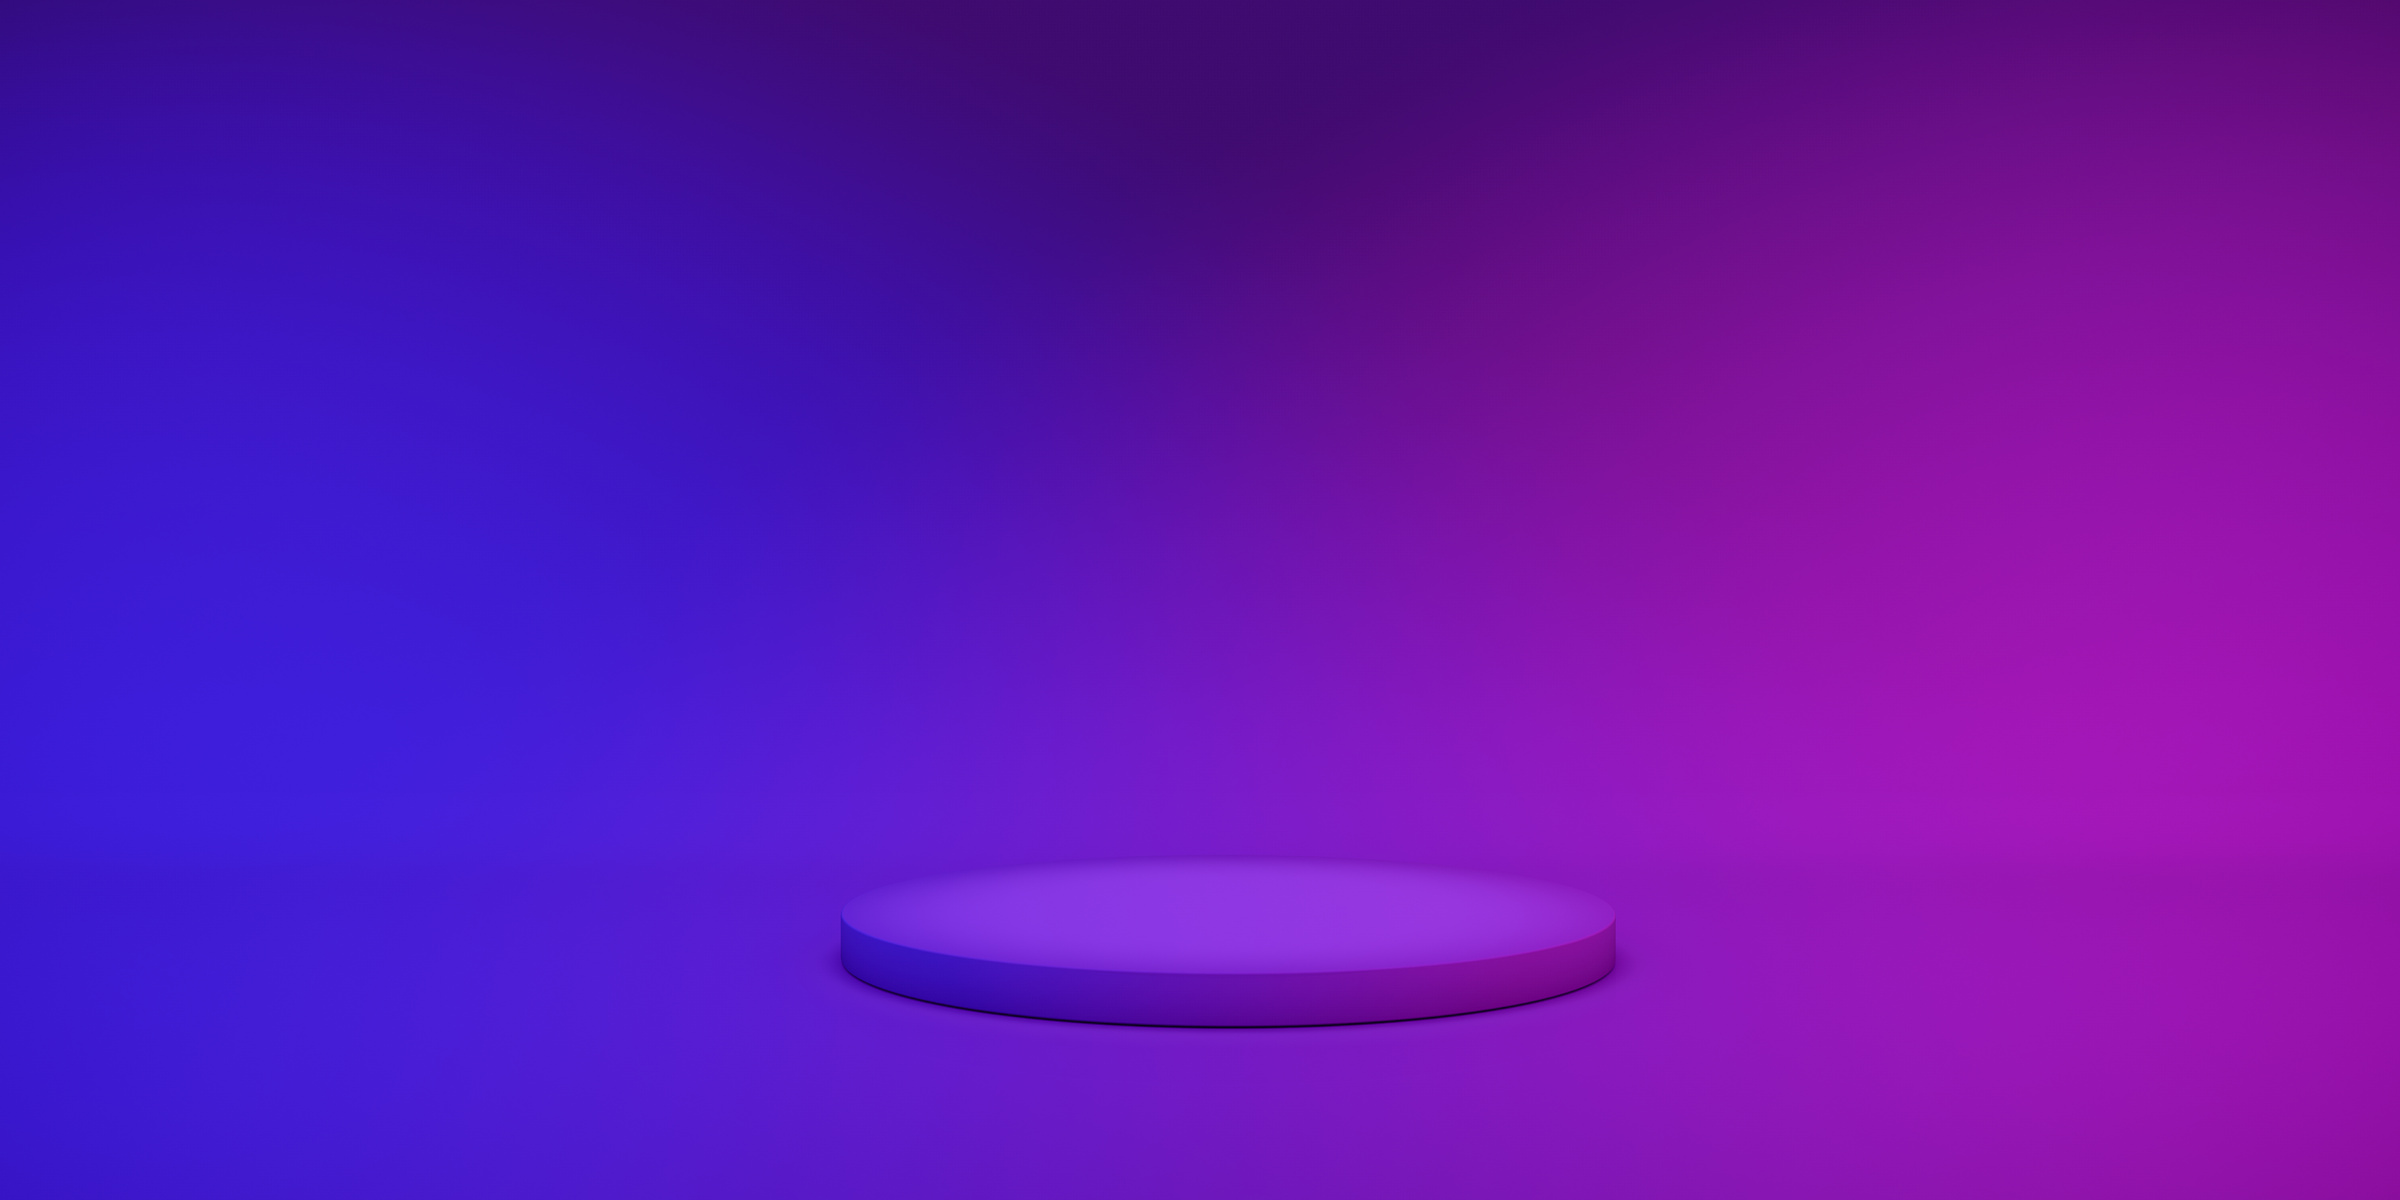 Round Podium on Purple Gradient Background